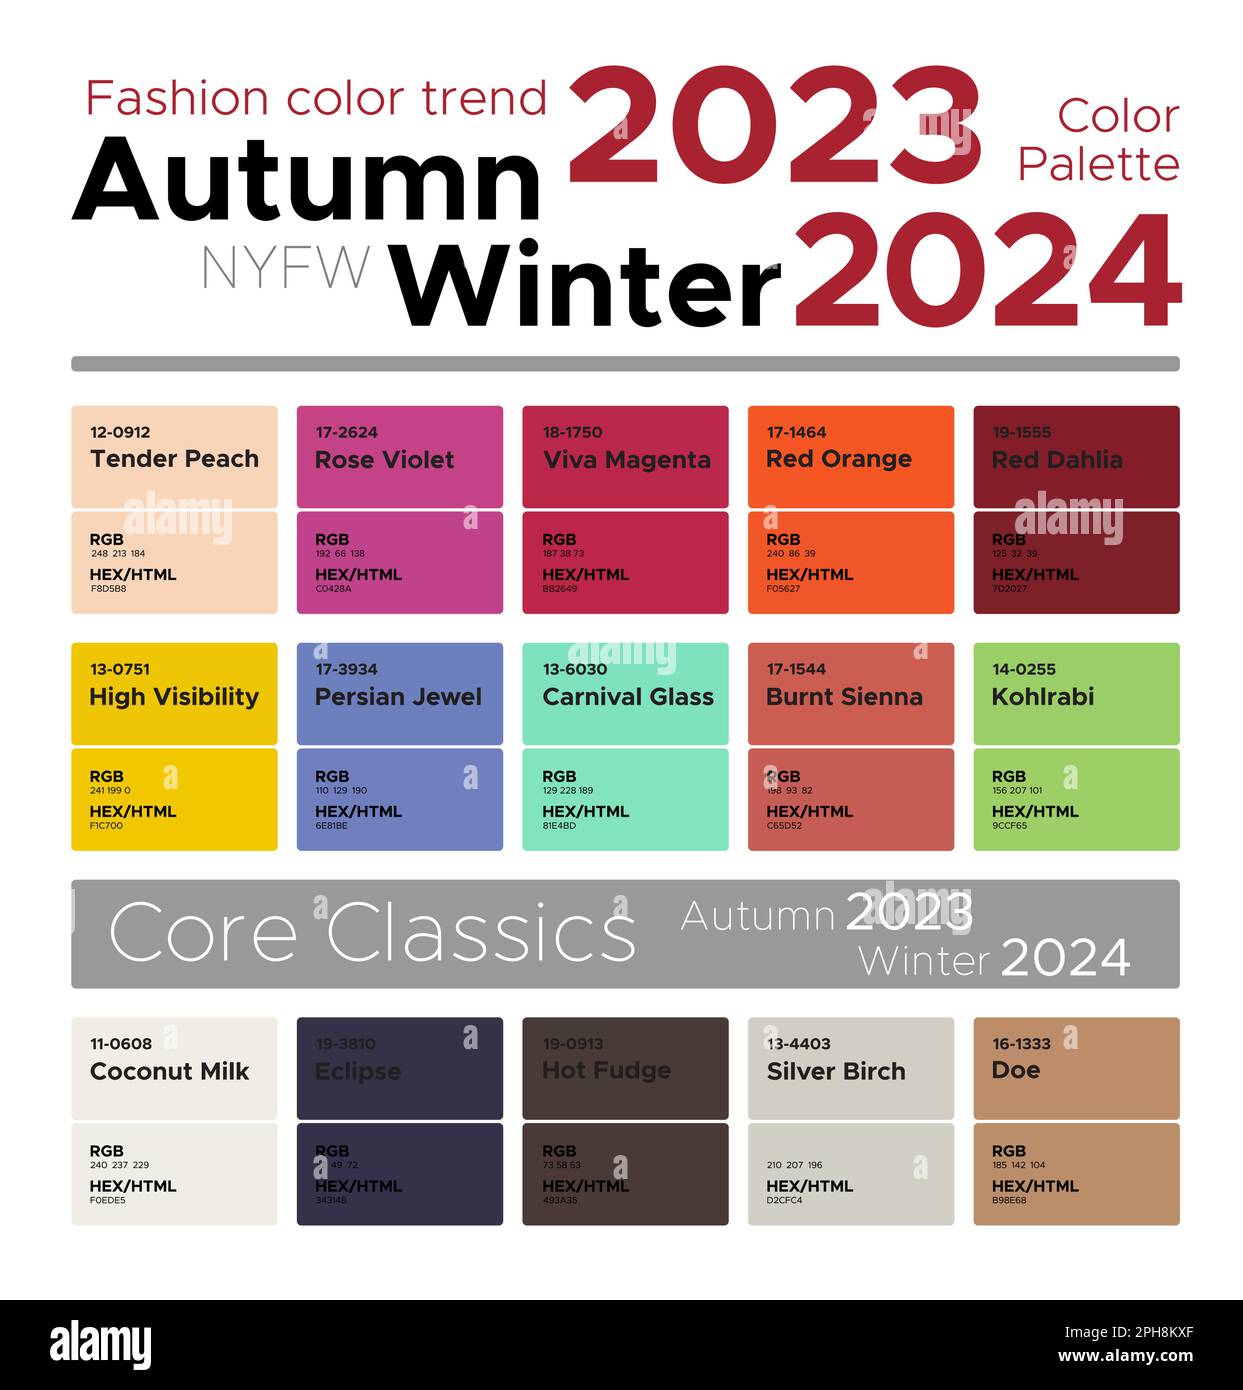 Fashion color trends Autumn Winter 20232024. Palette fashion colors